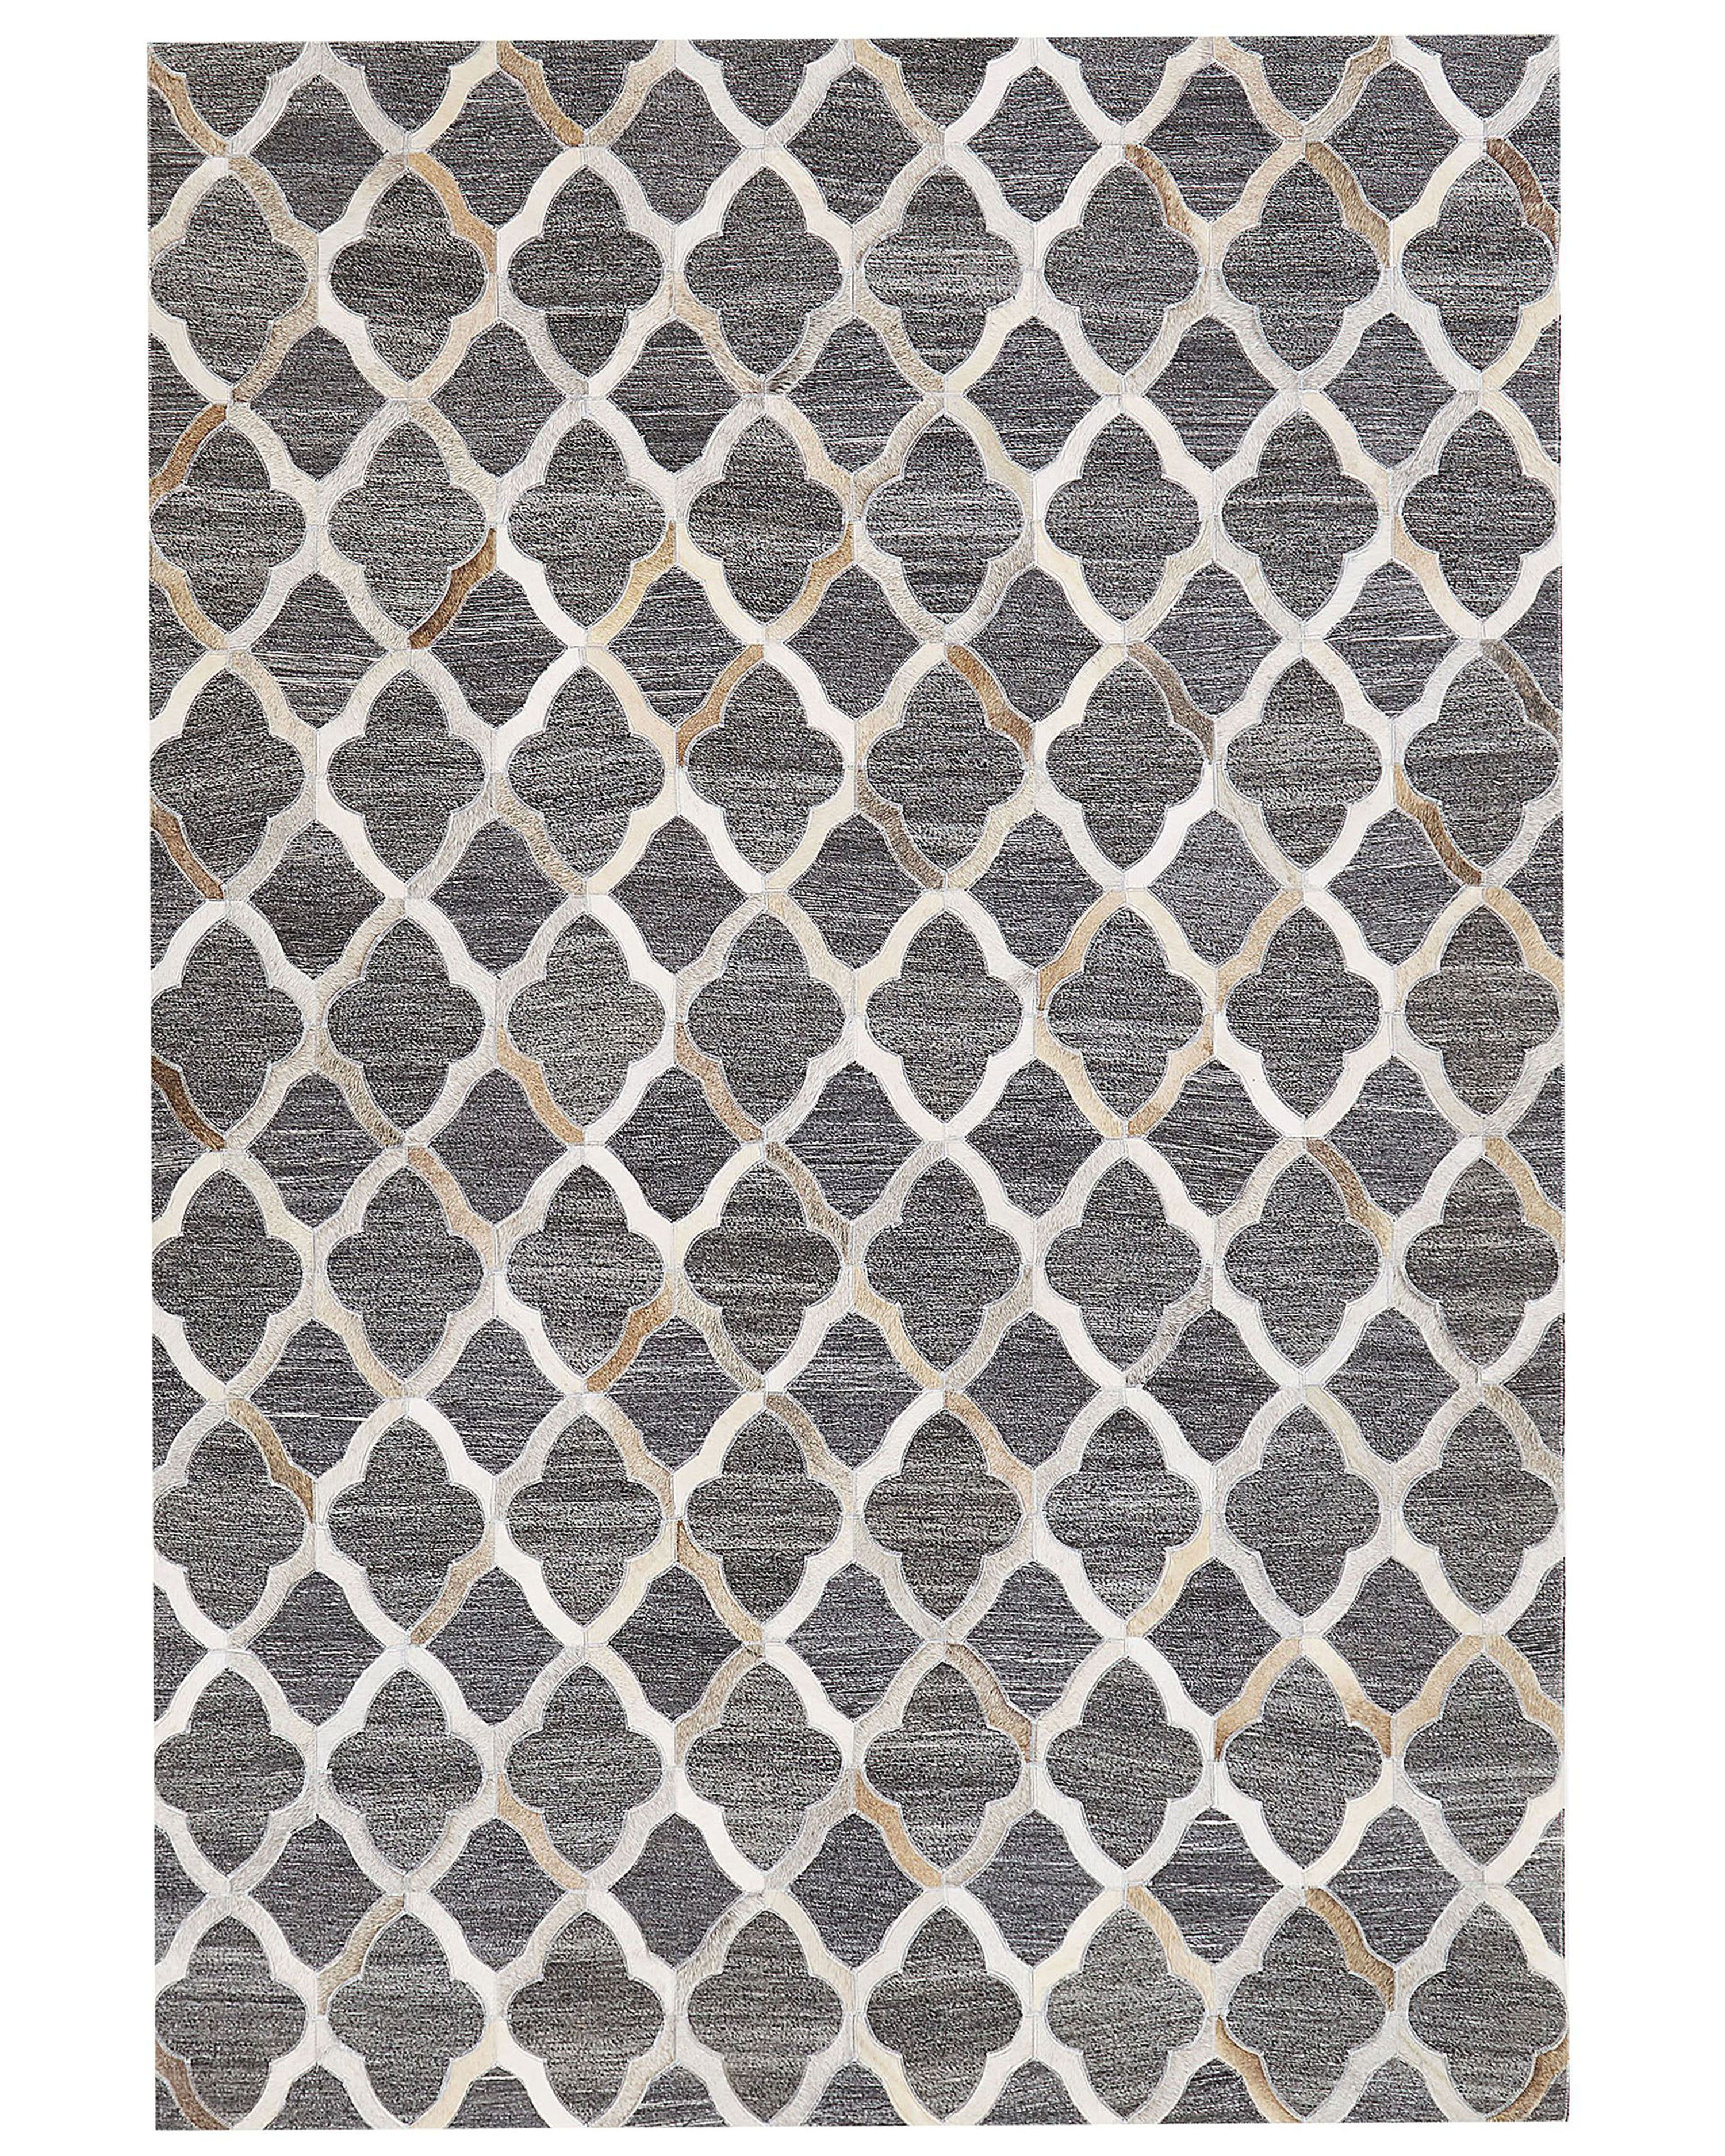 Tapis en cuir et tissu gris et beige 140 x 200 cm ROLUNAY_851124